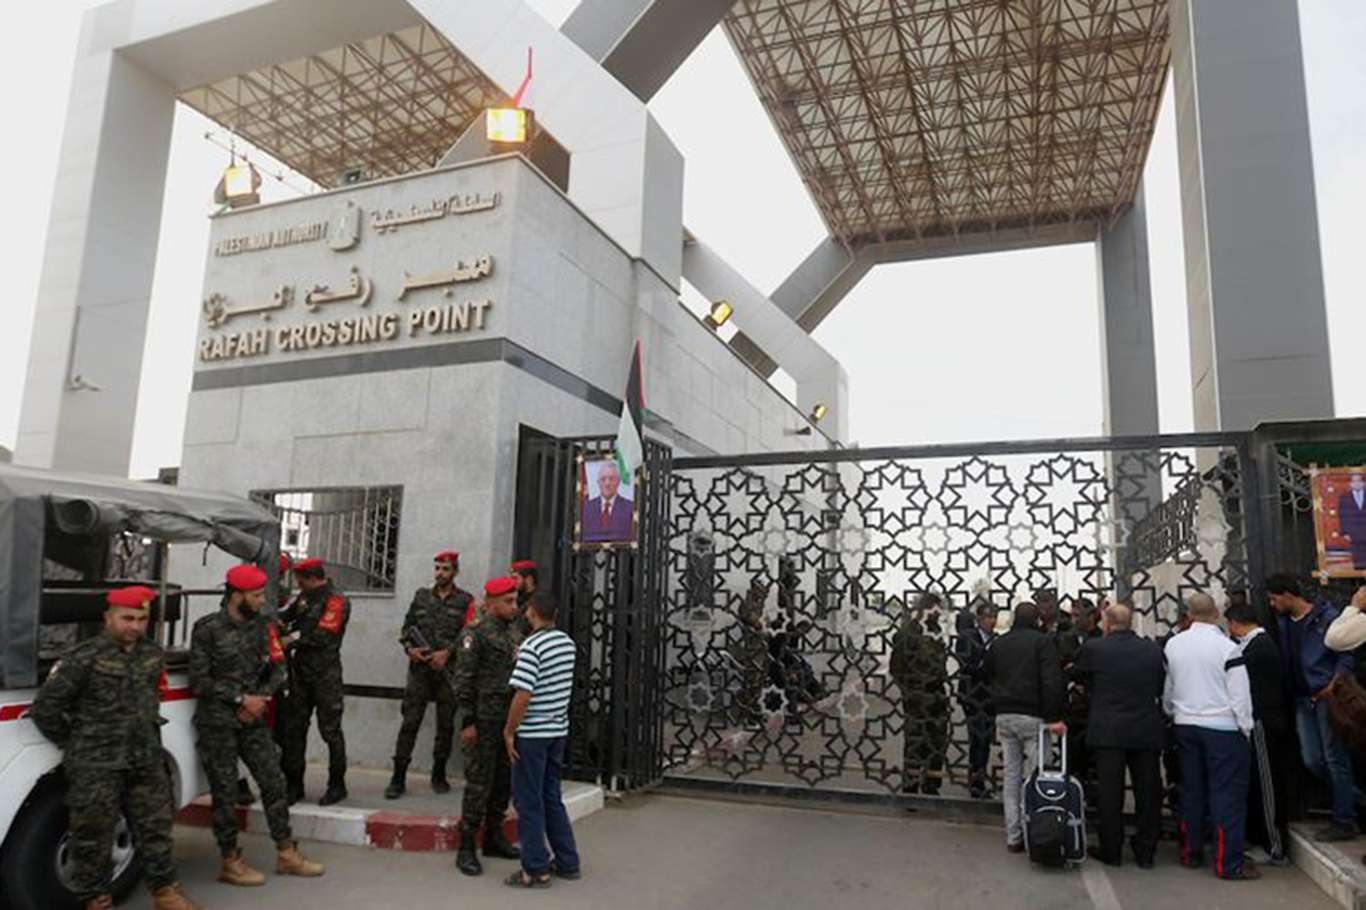 Refah sınır kapısı salı gününe kadar açık kalacak